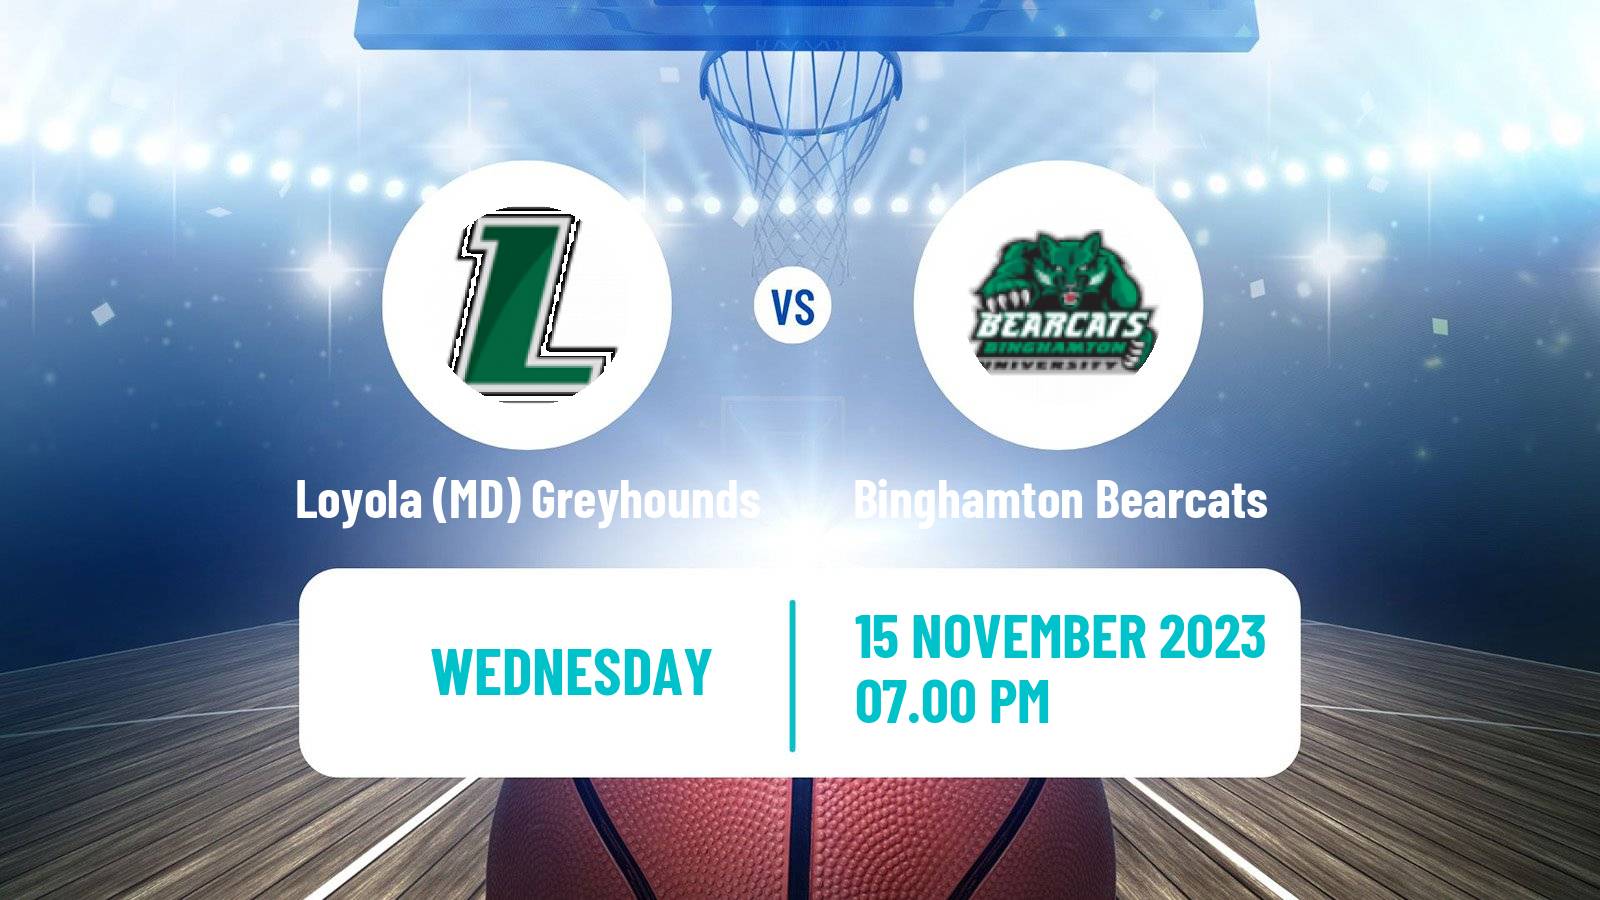 Basketball NCAA College Basketball Loyola (MD) Greyhounds - Binghamton Bearcats